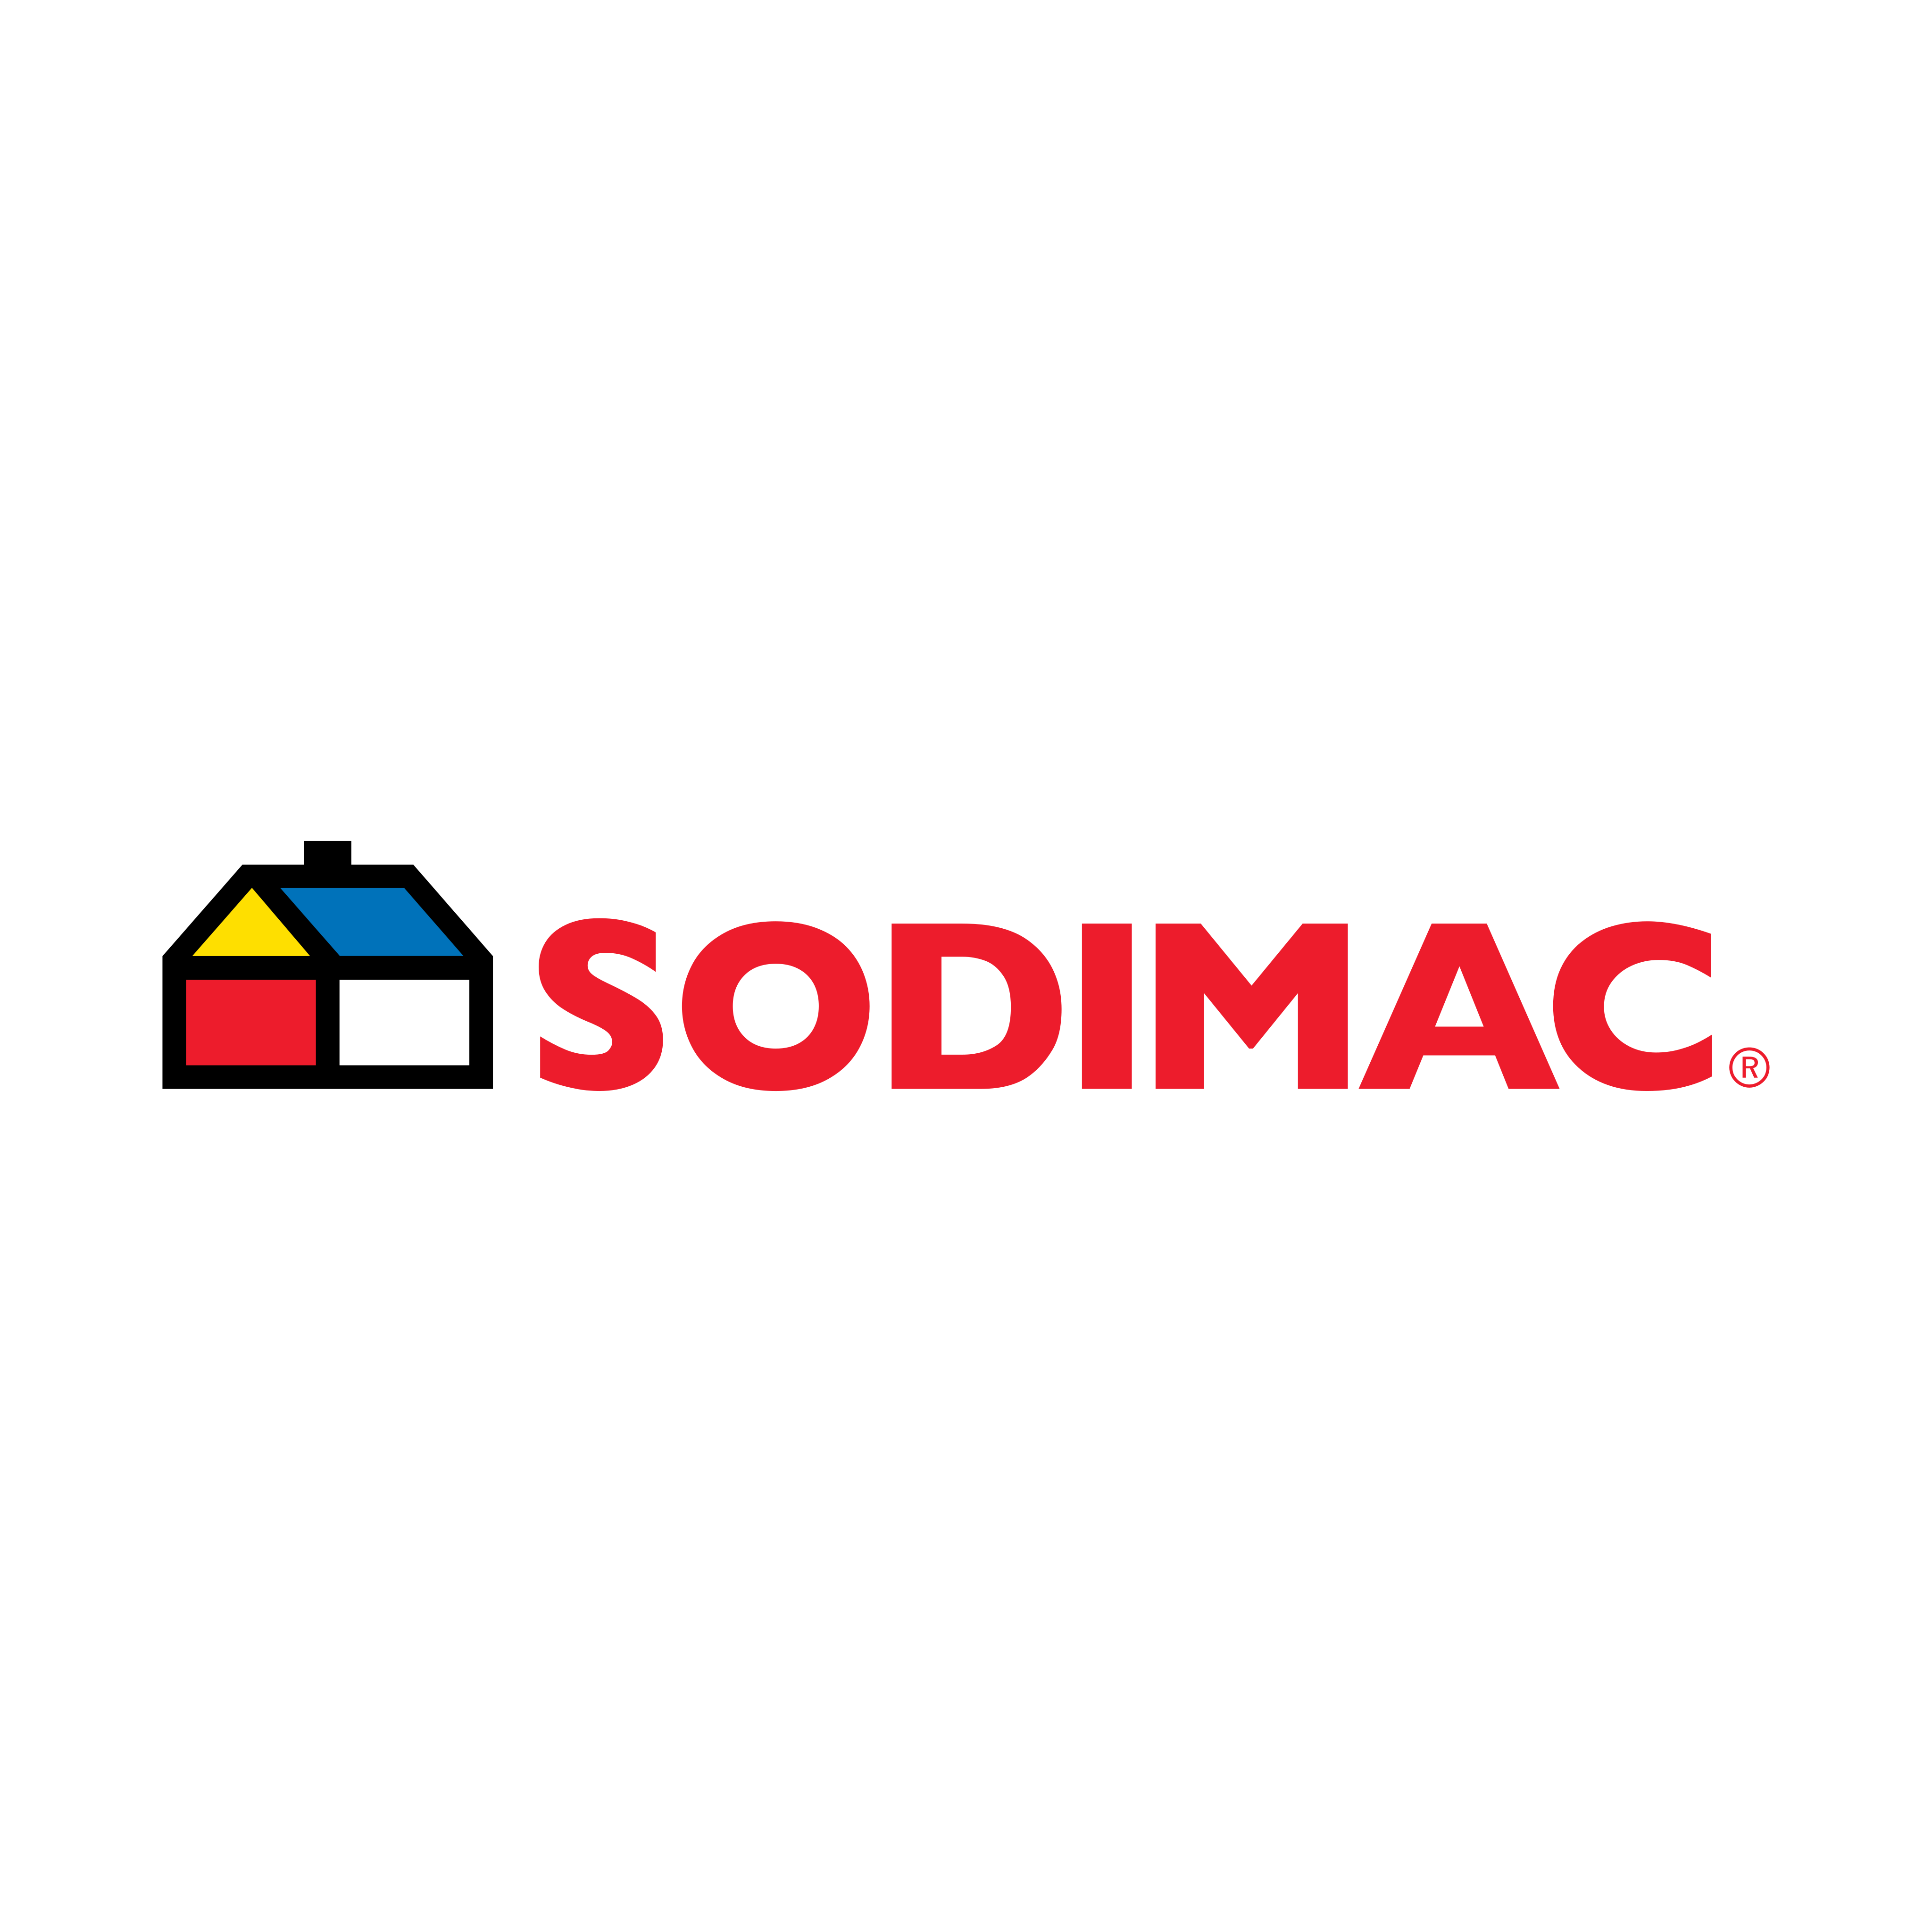 sodimac logo 0 - Sodimac Logo